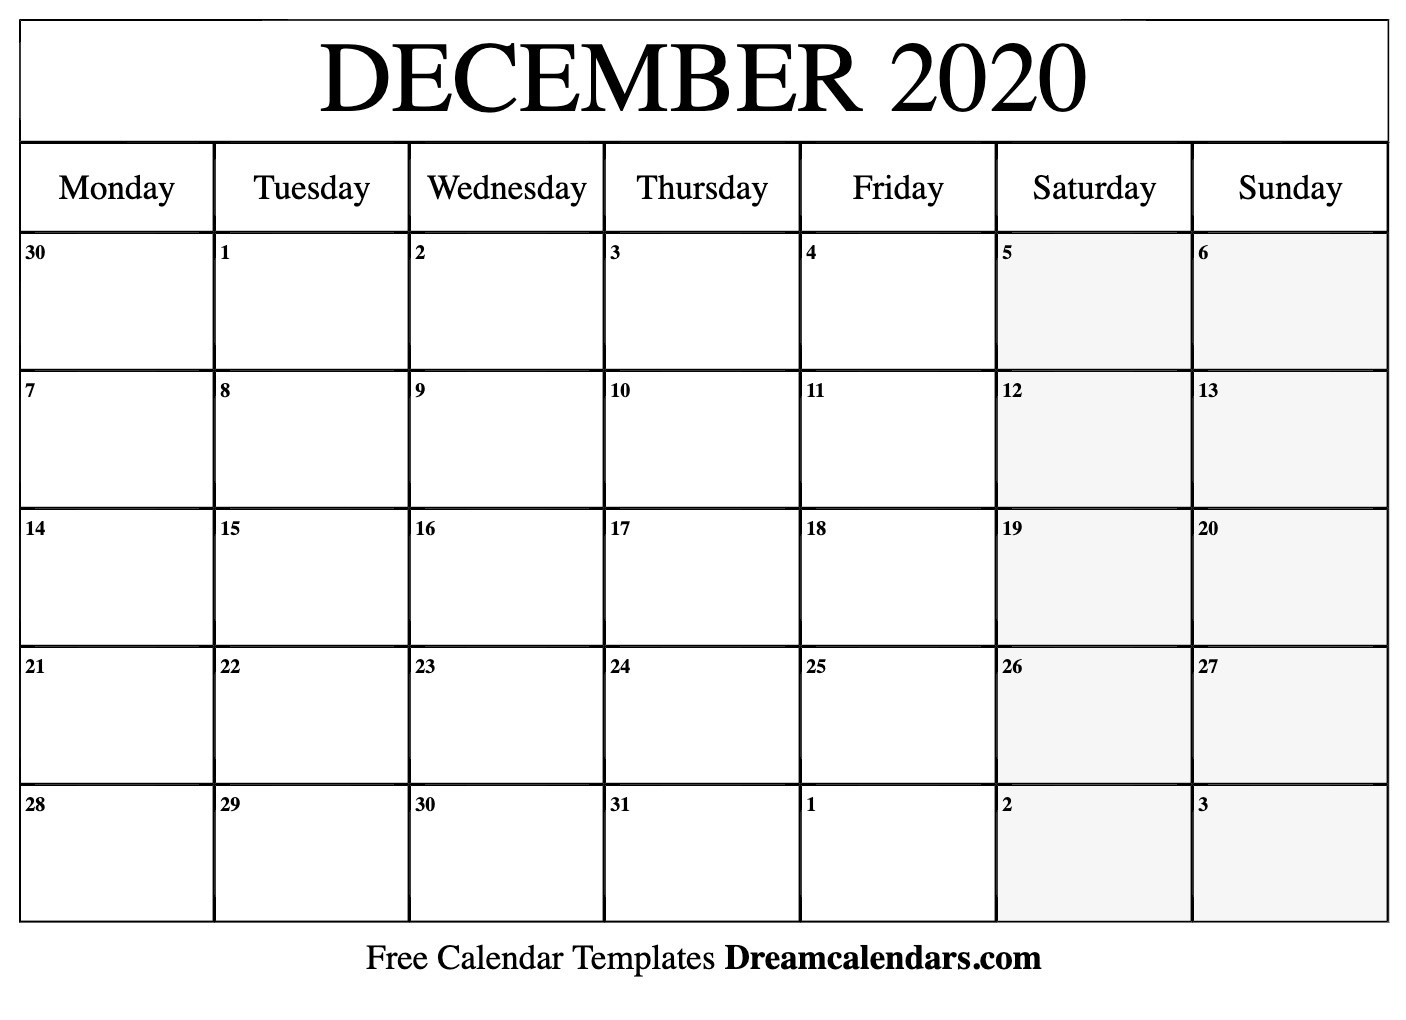 Depo Provera Calendar 2020 | Calendar For Planning